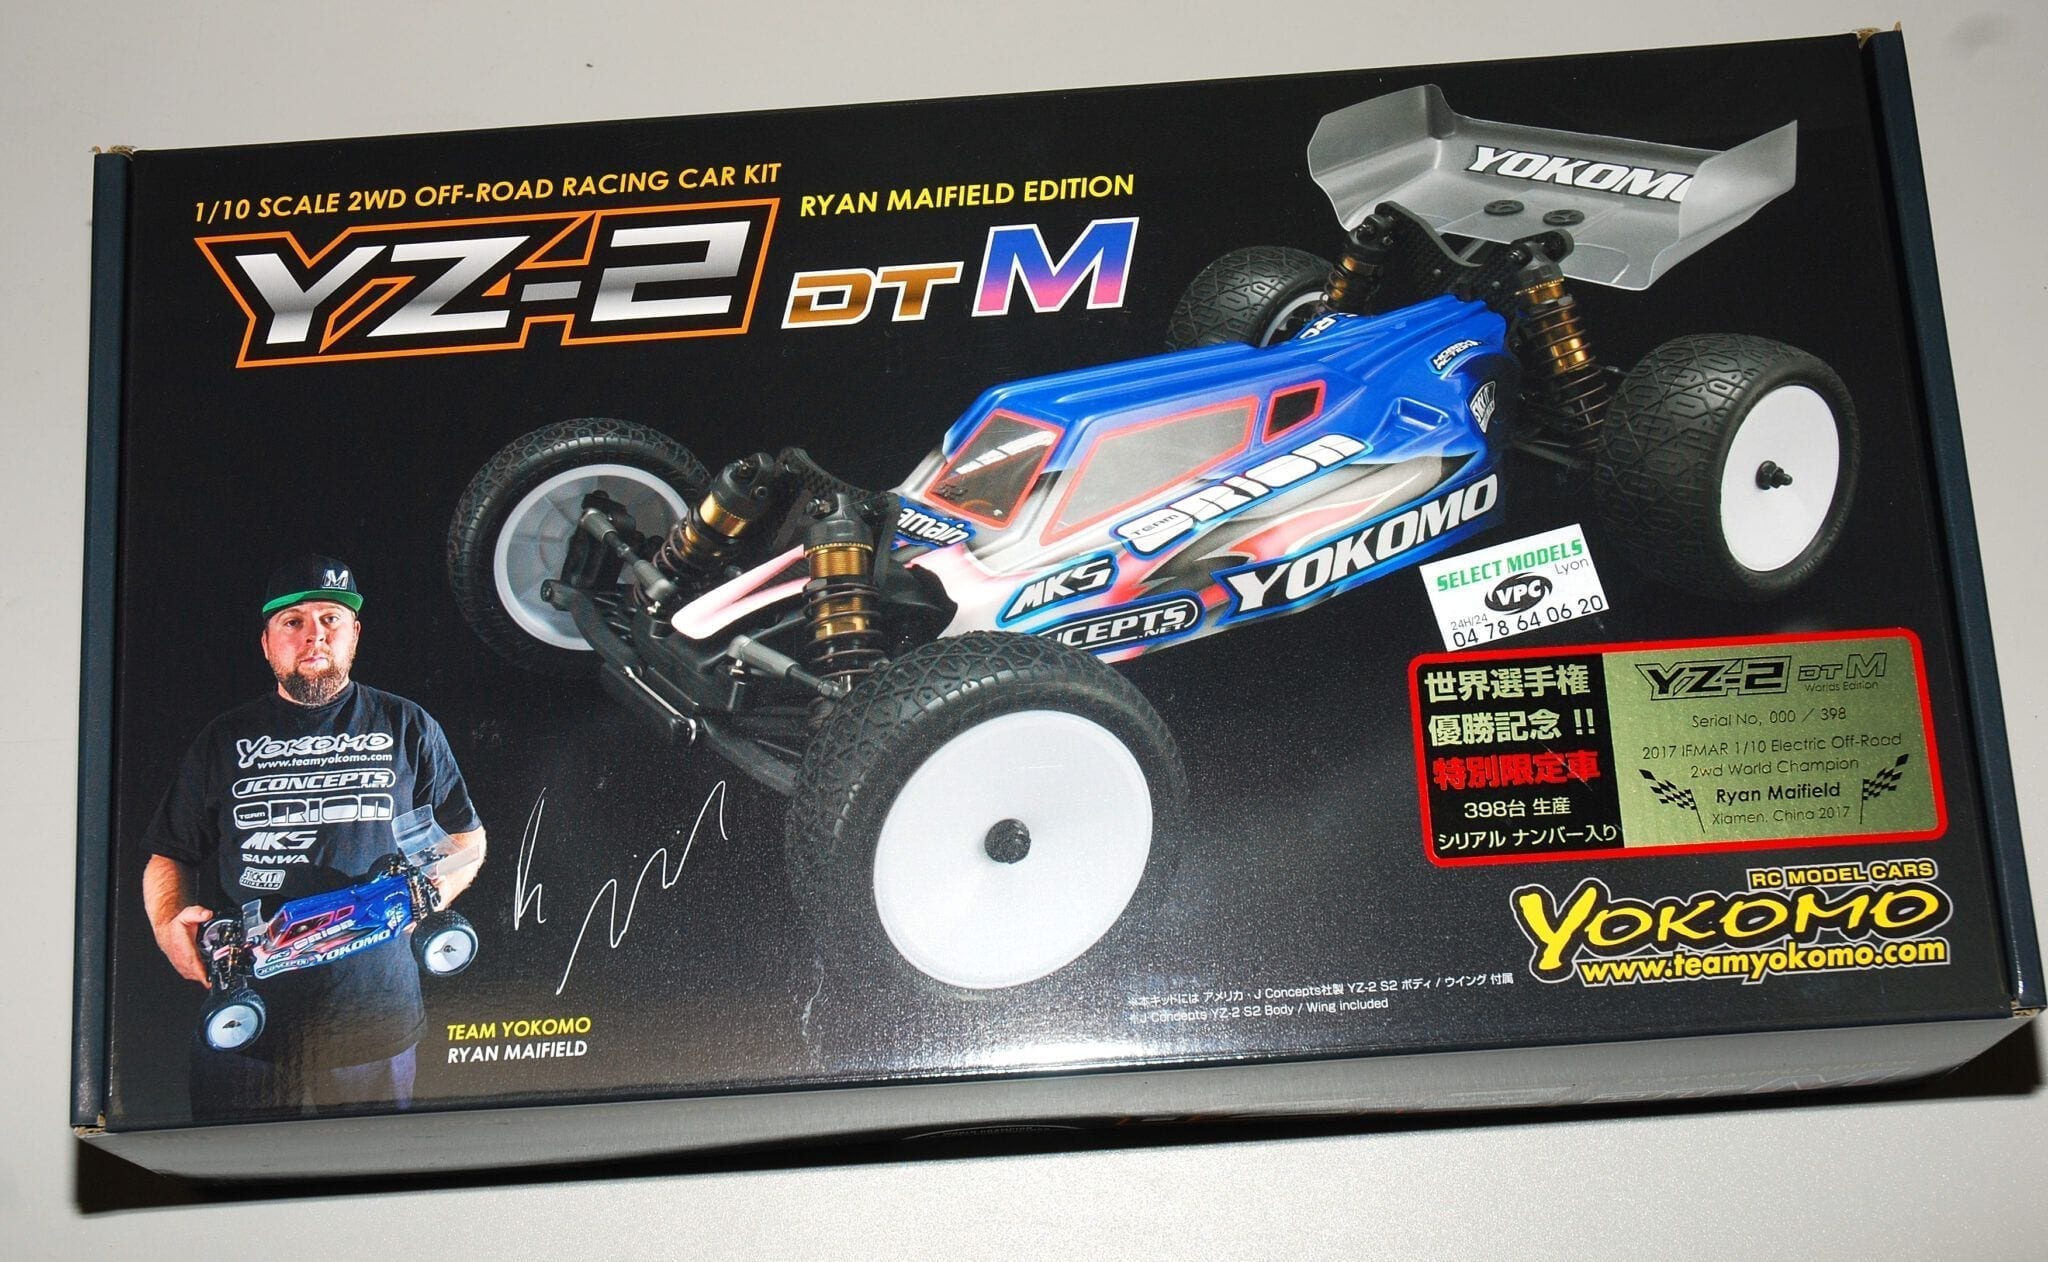 Yz-2dtM champion du monde TT 2wd